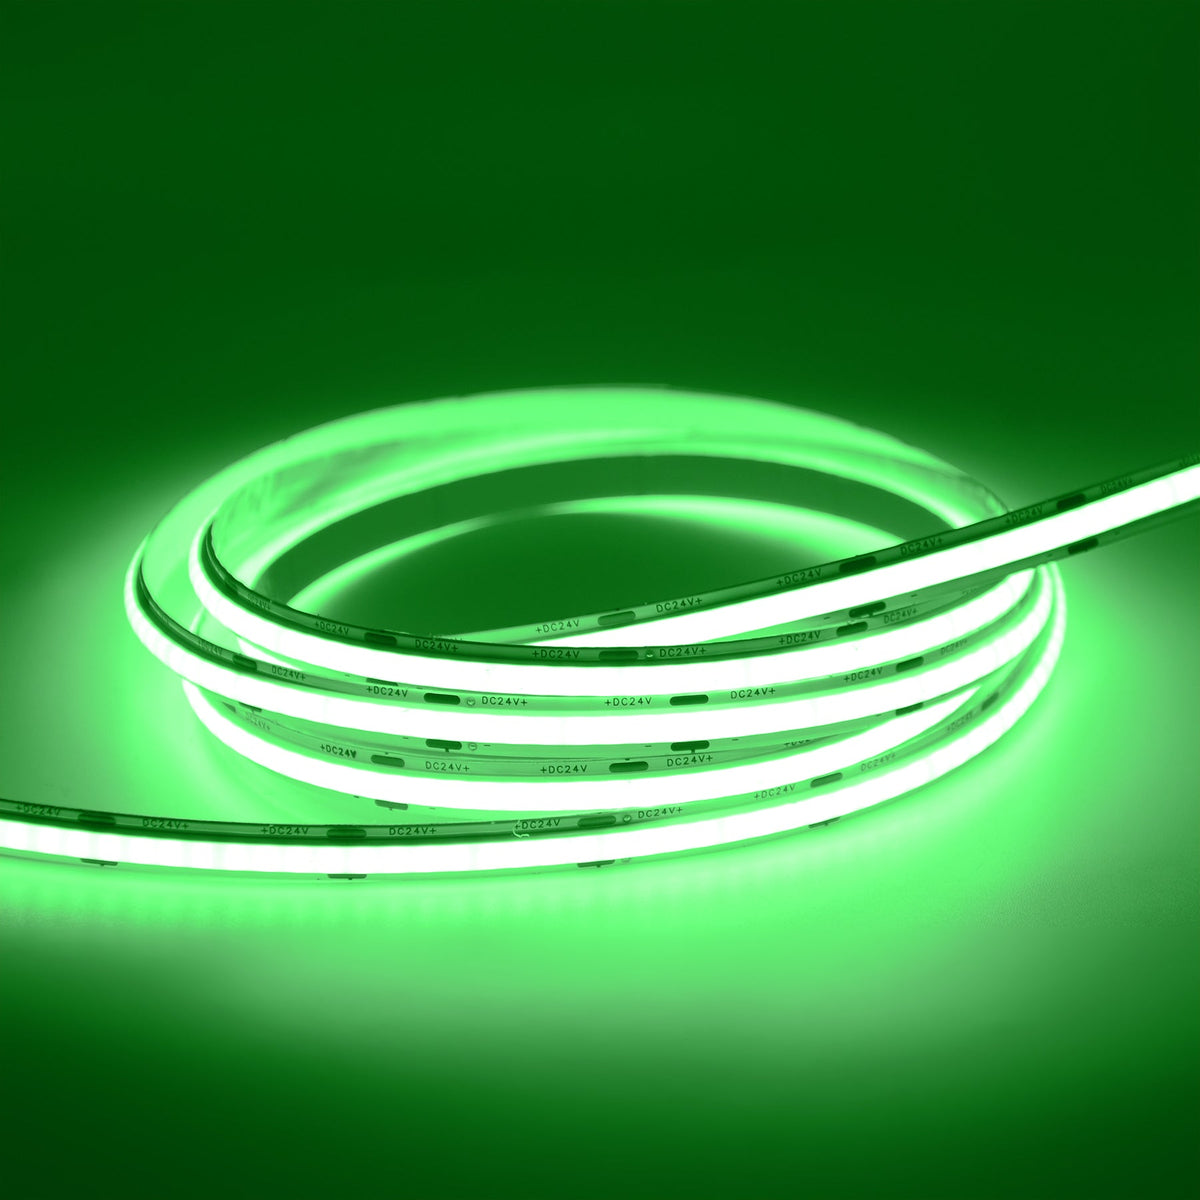 G.W.S LED Wholesale LED Strip Lights Strip Only / 5M / Green LED COB Strip Light, Seamless, 5M Reel, IP20, 24V, 8mm Wide